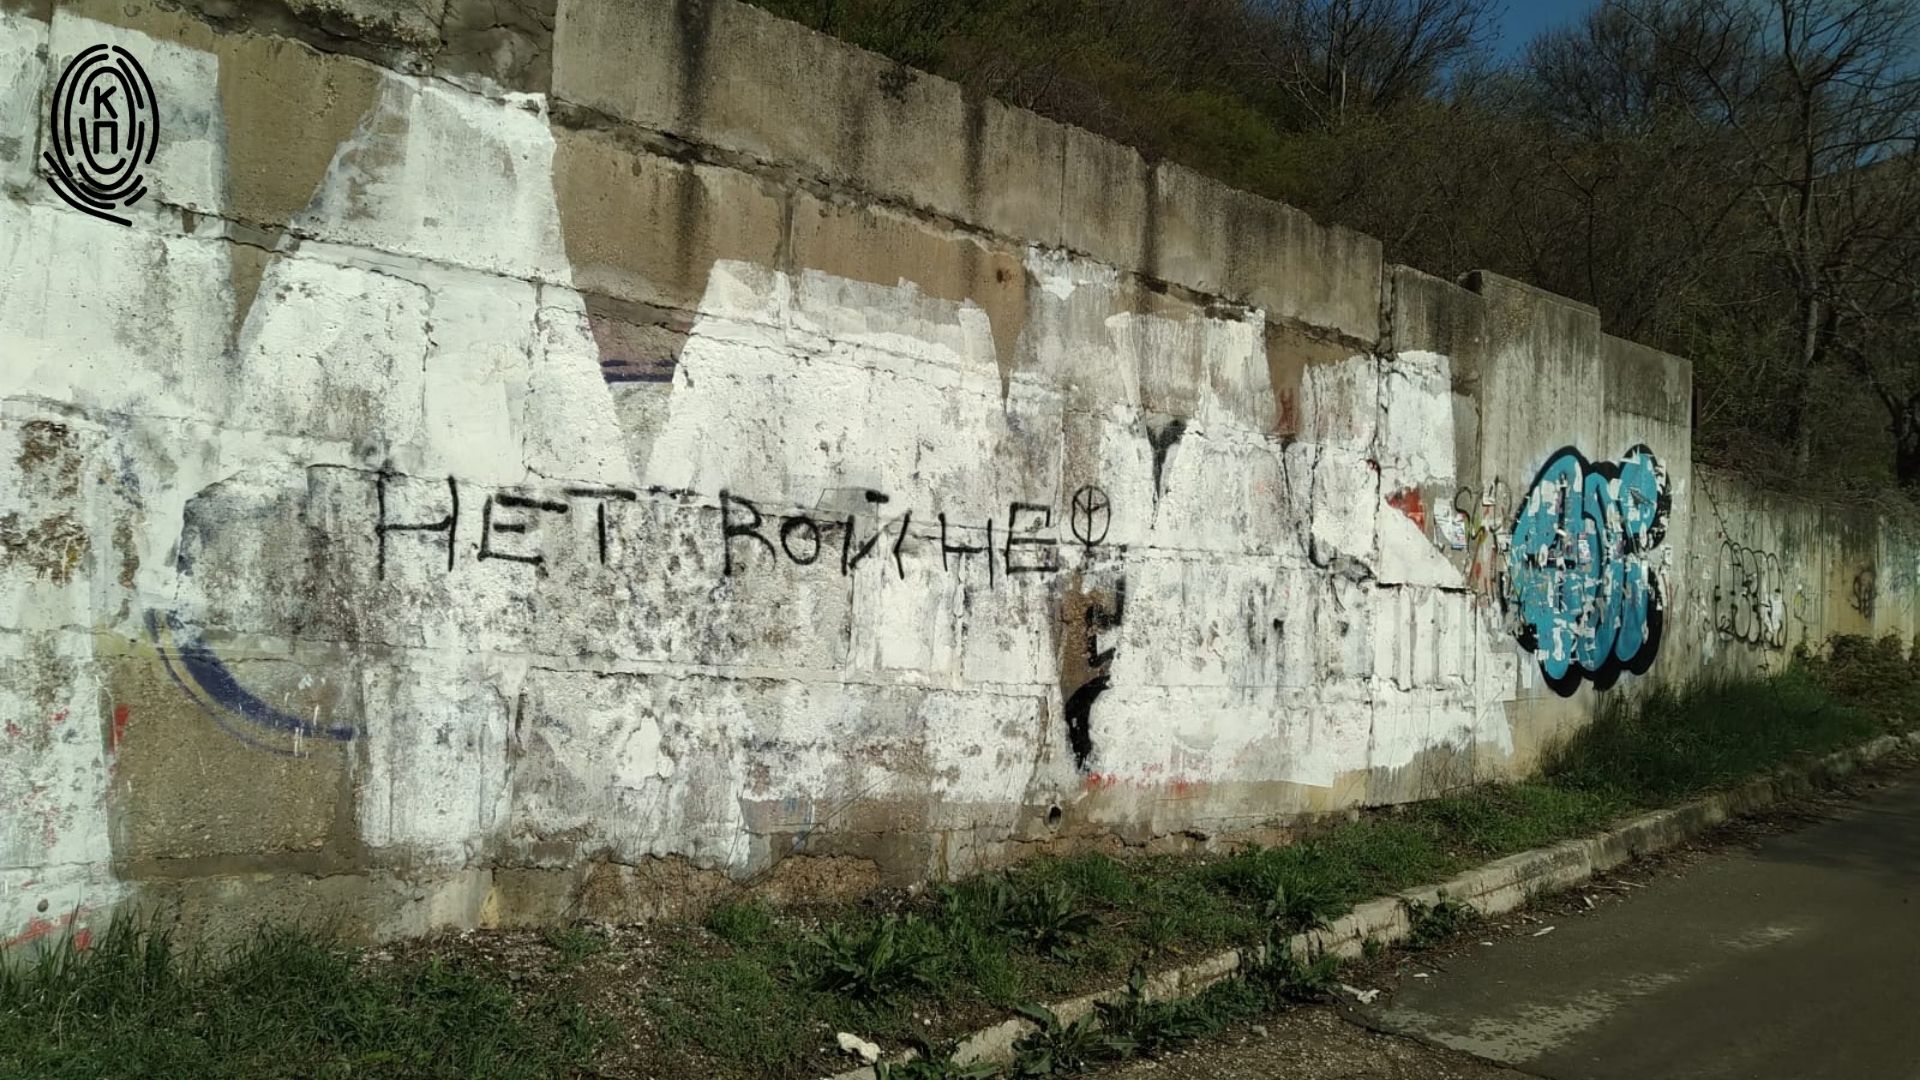 Надпись "нет войне" на заборе в Крыму. Фото: Крымский процесс